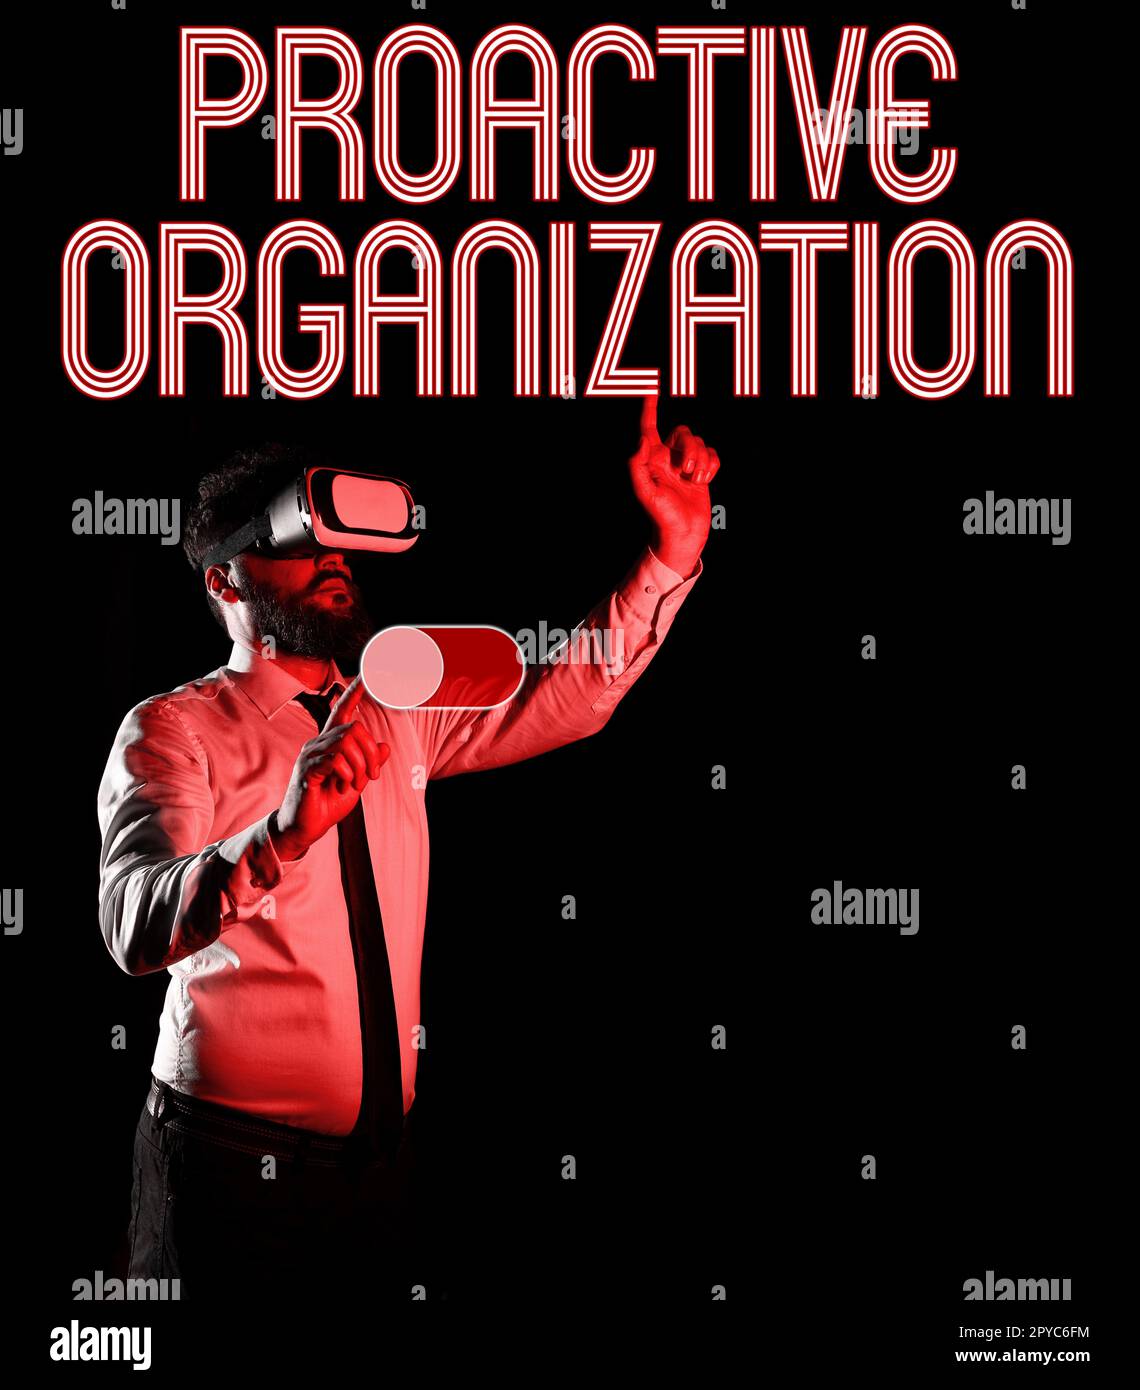 Écriture manuscrite proactive Organisation. Action de vue d'ensemble de l'entreprise et comportement axé sur les résultats d'une entreprise Banque D'Images